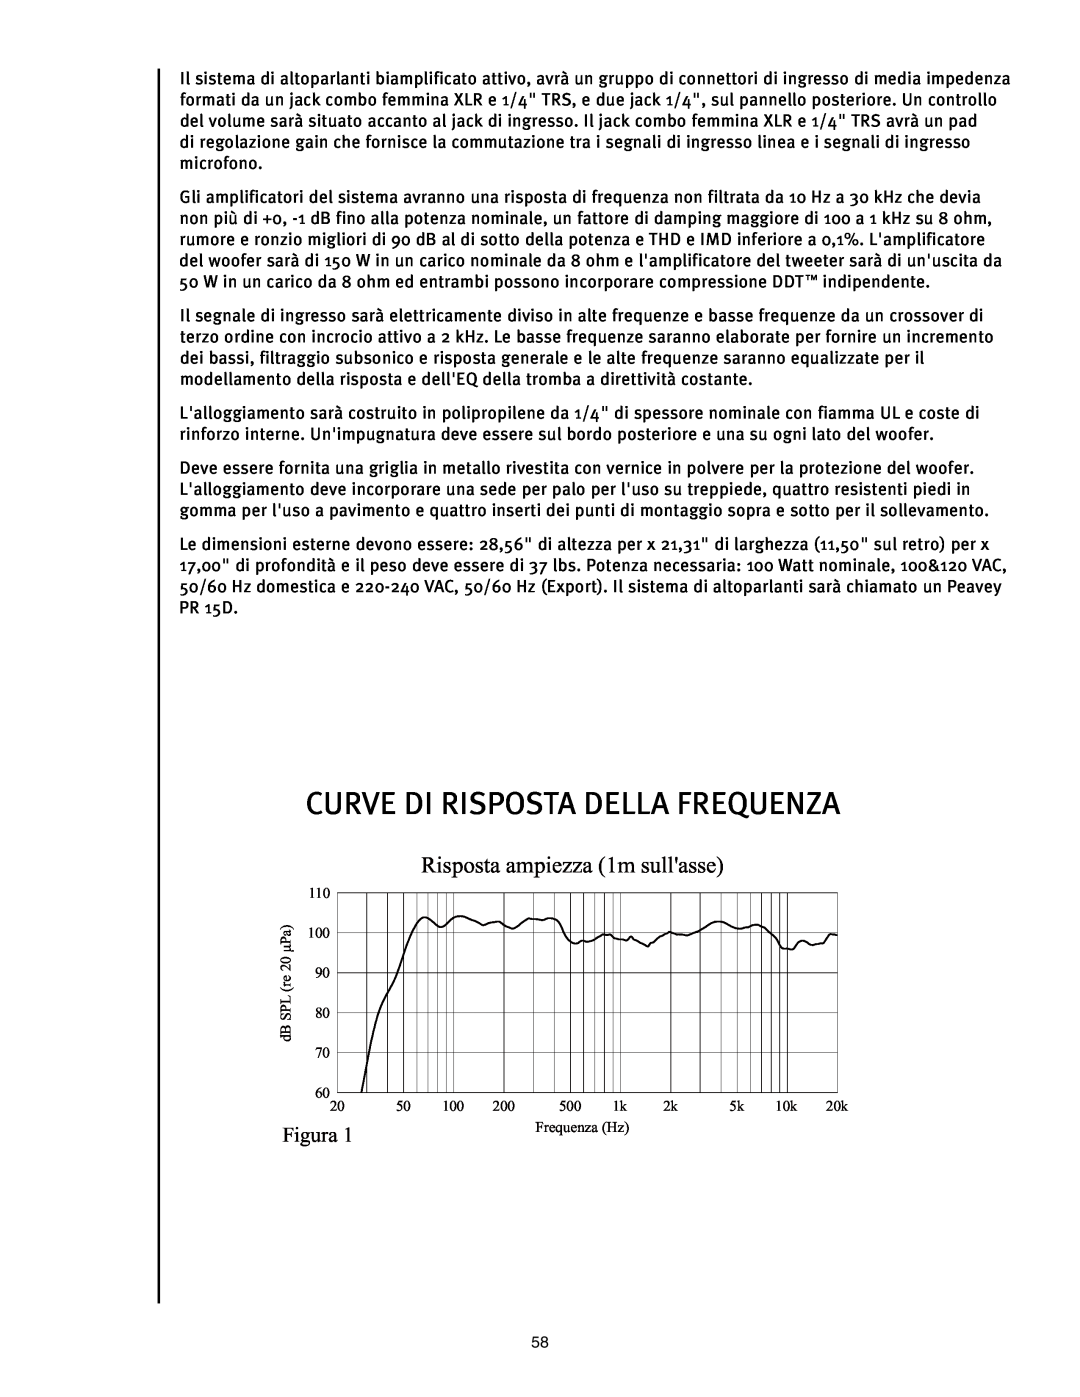 Peavey PR 15 D manual Curve Di Risposta Della Frequenza, Risposta ampiezza 1m sullasse, Figura 